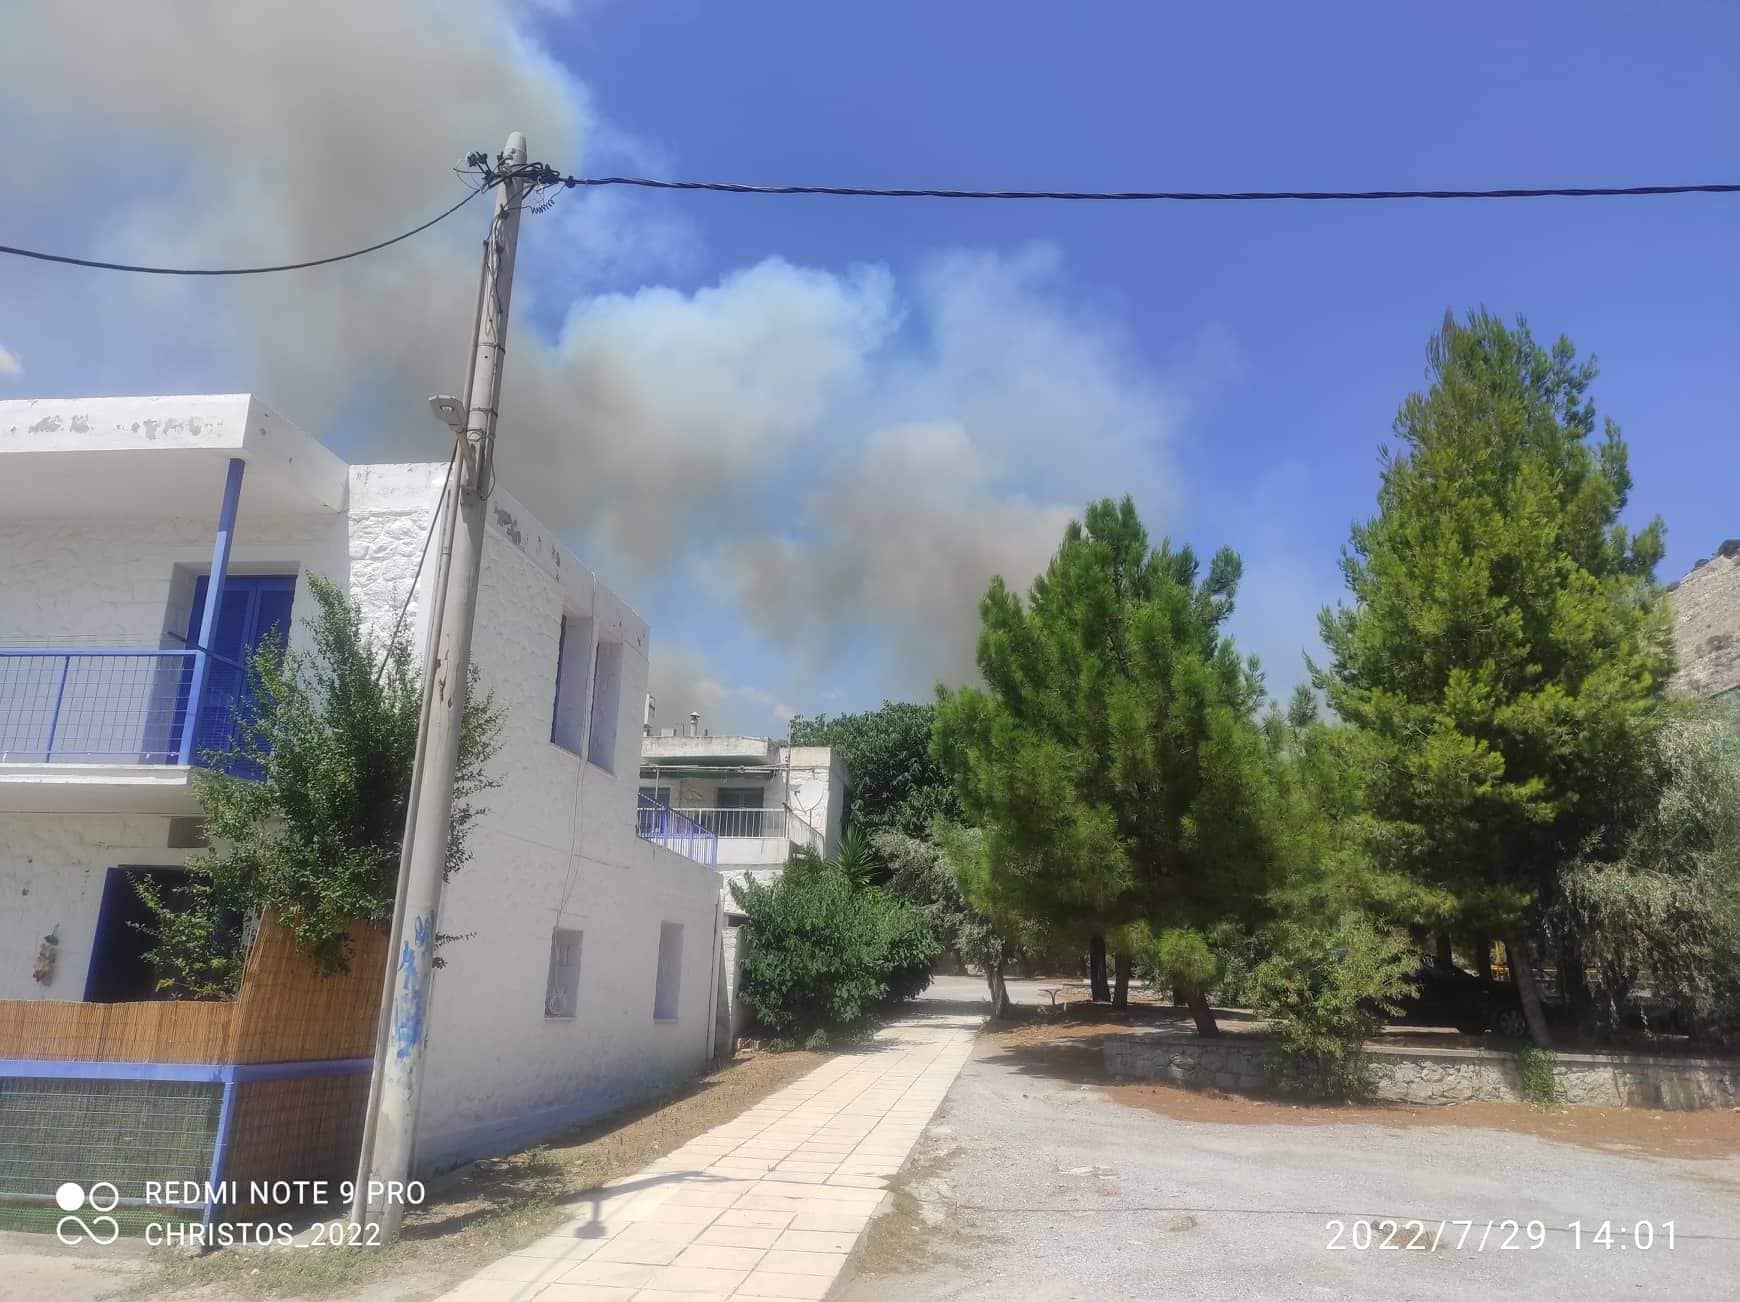 Μάχη με τις φλόγες 1 χιλιόμετρο από το Δίστομο - Βίντεο